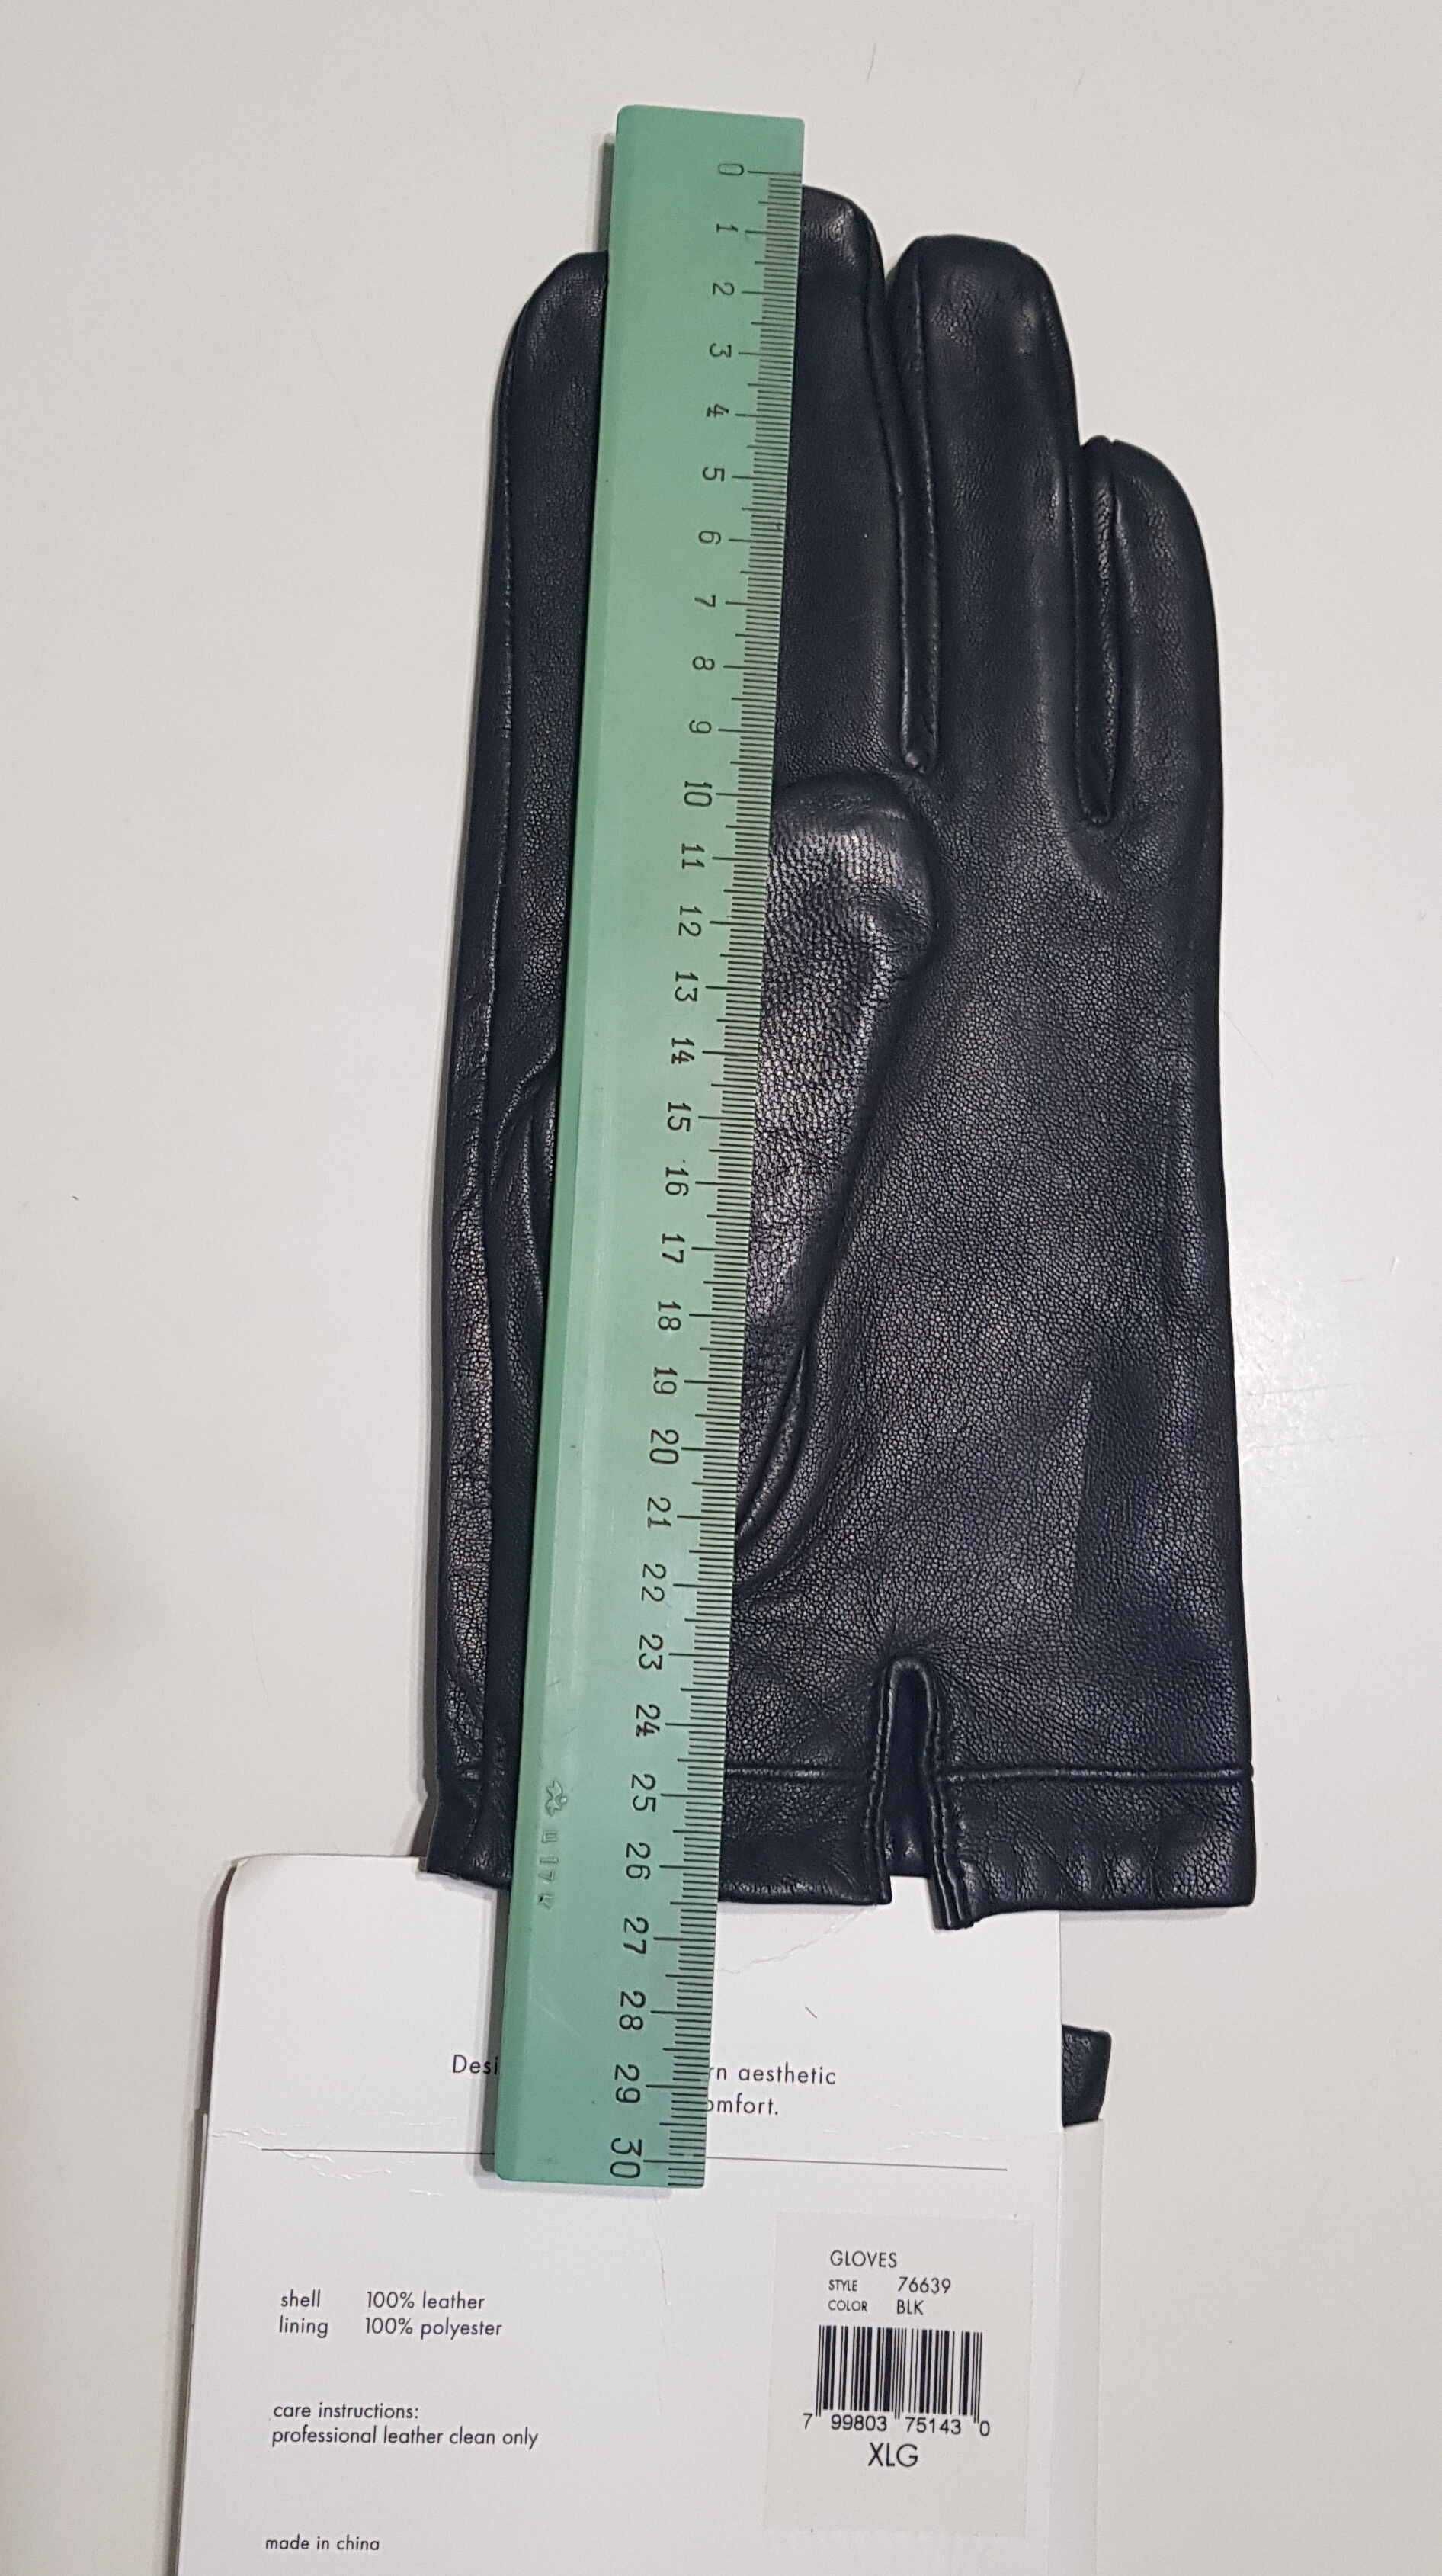 Мужские кожаные перчатки Calvin Klein на флисовой подкладке новые XL